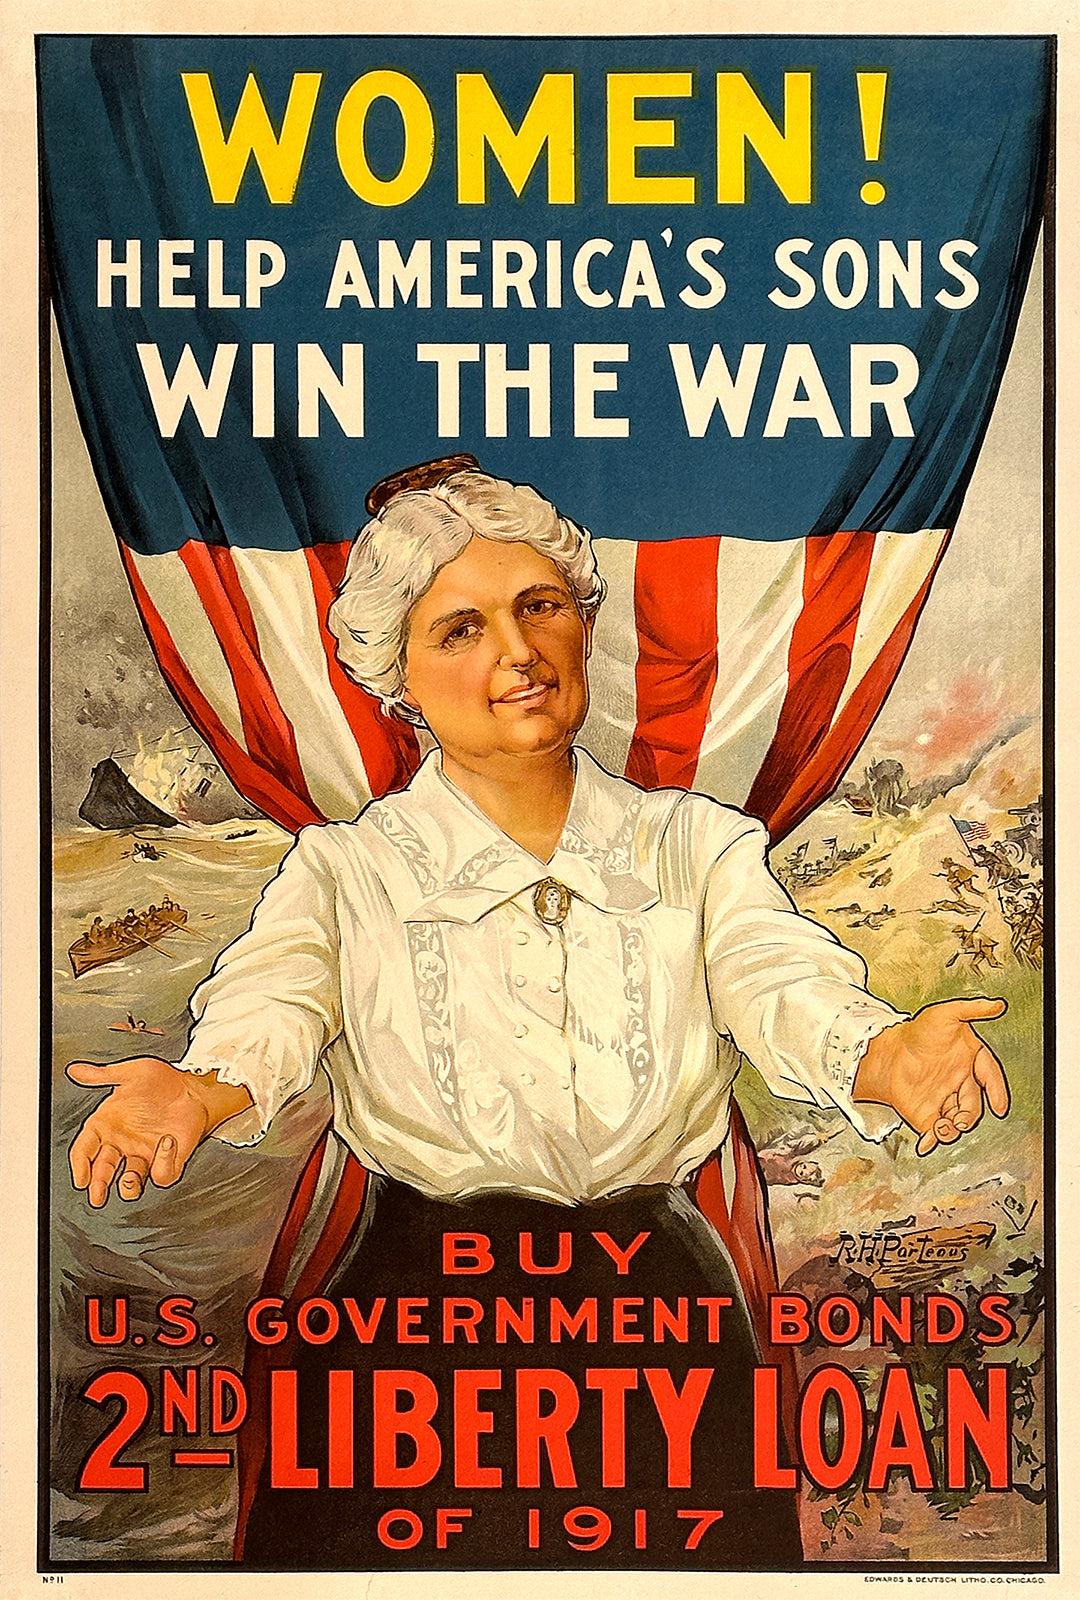 http://postergroup.com/cdn/shop/files/Women-Help-Americas-Sons-Win-The-War-Poster.jpg?v=1689285347